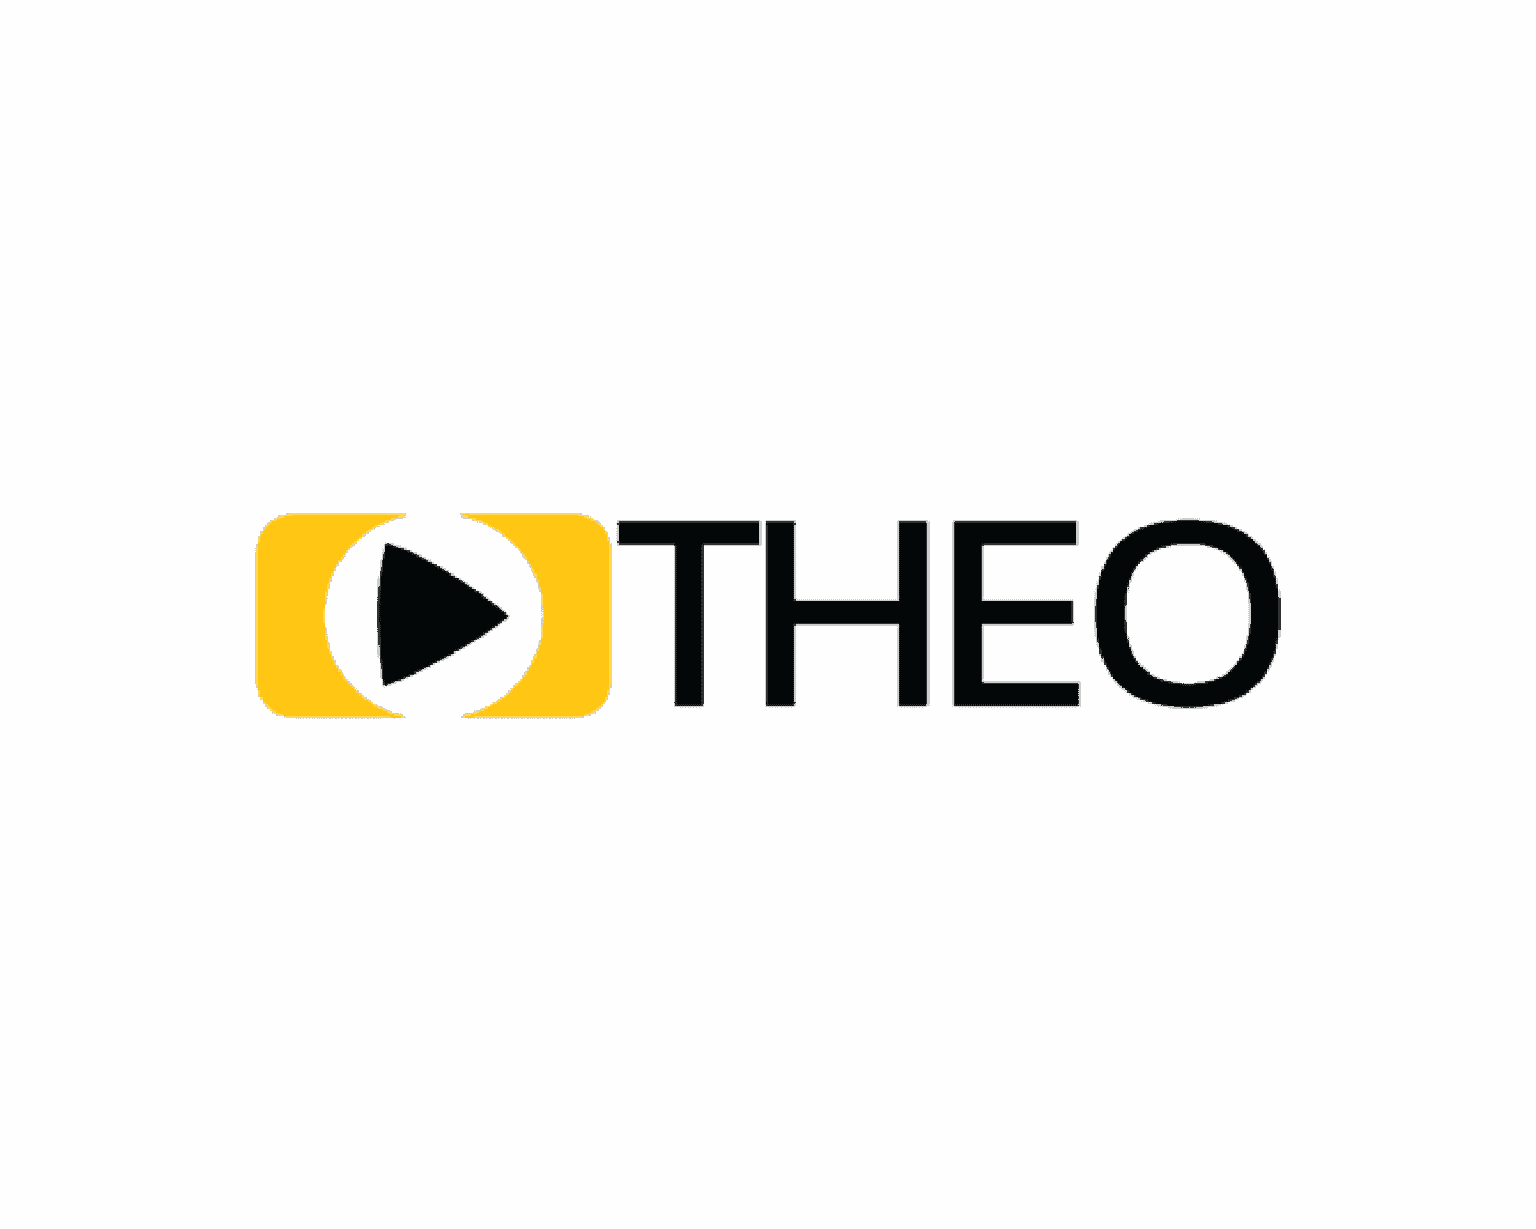 THEO_-1536x1229